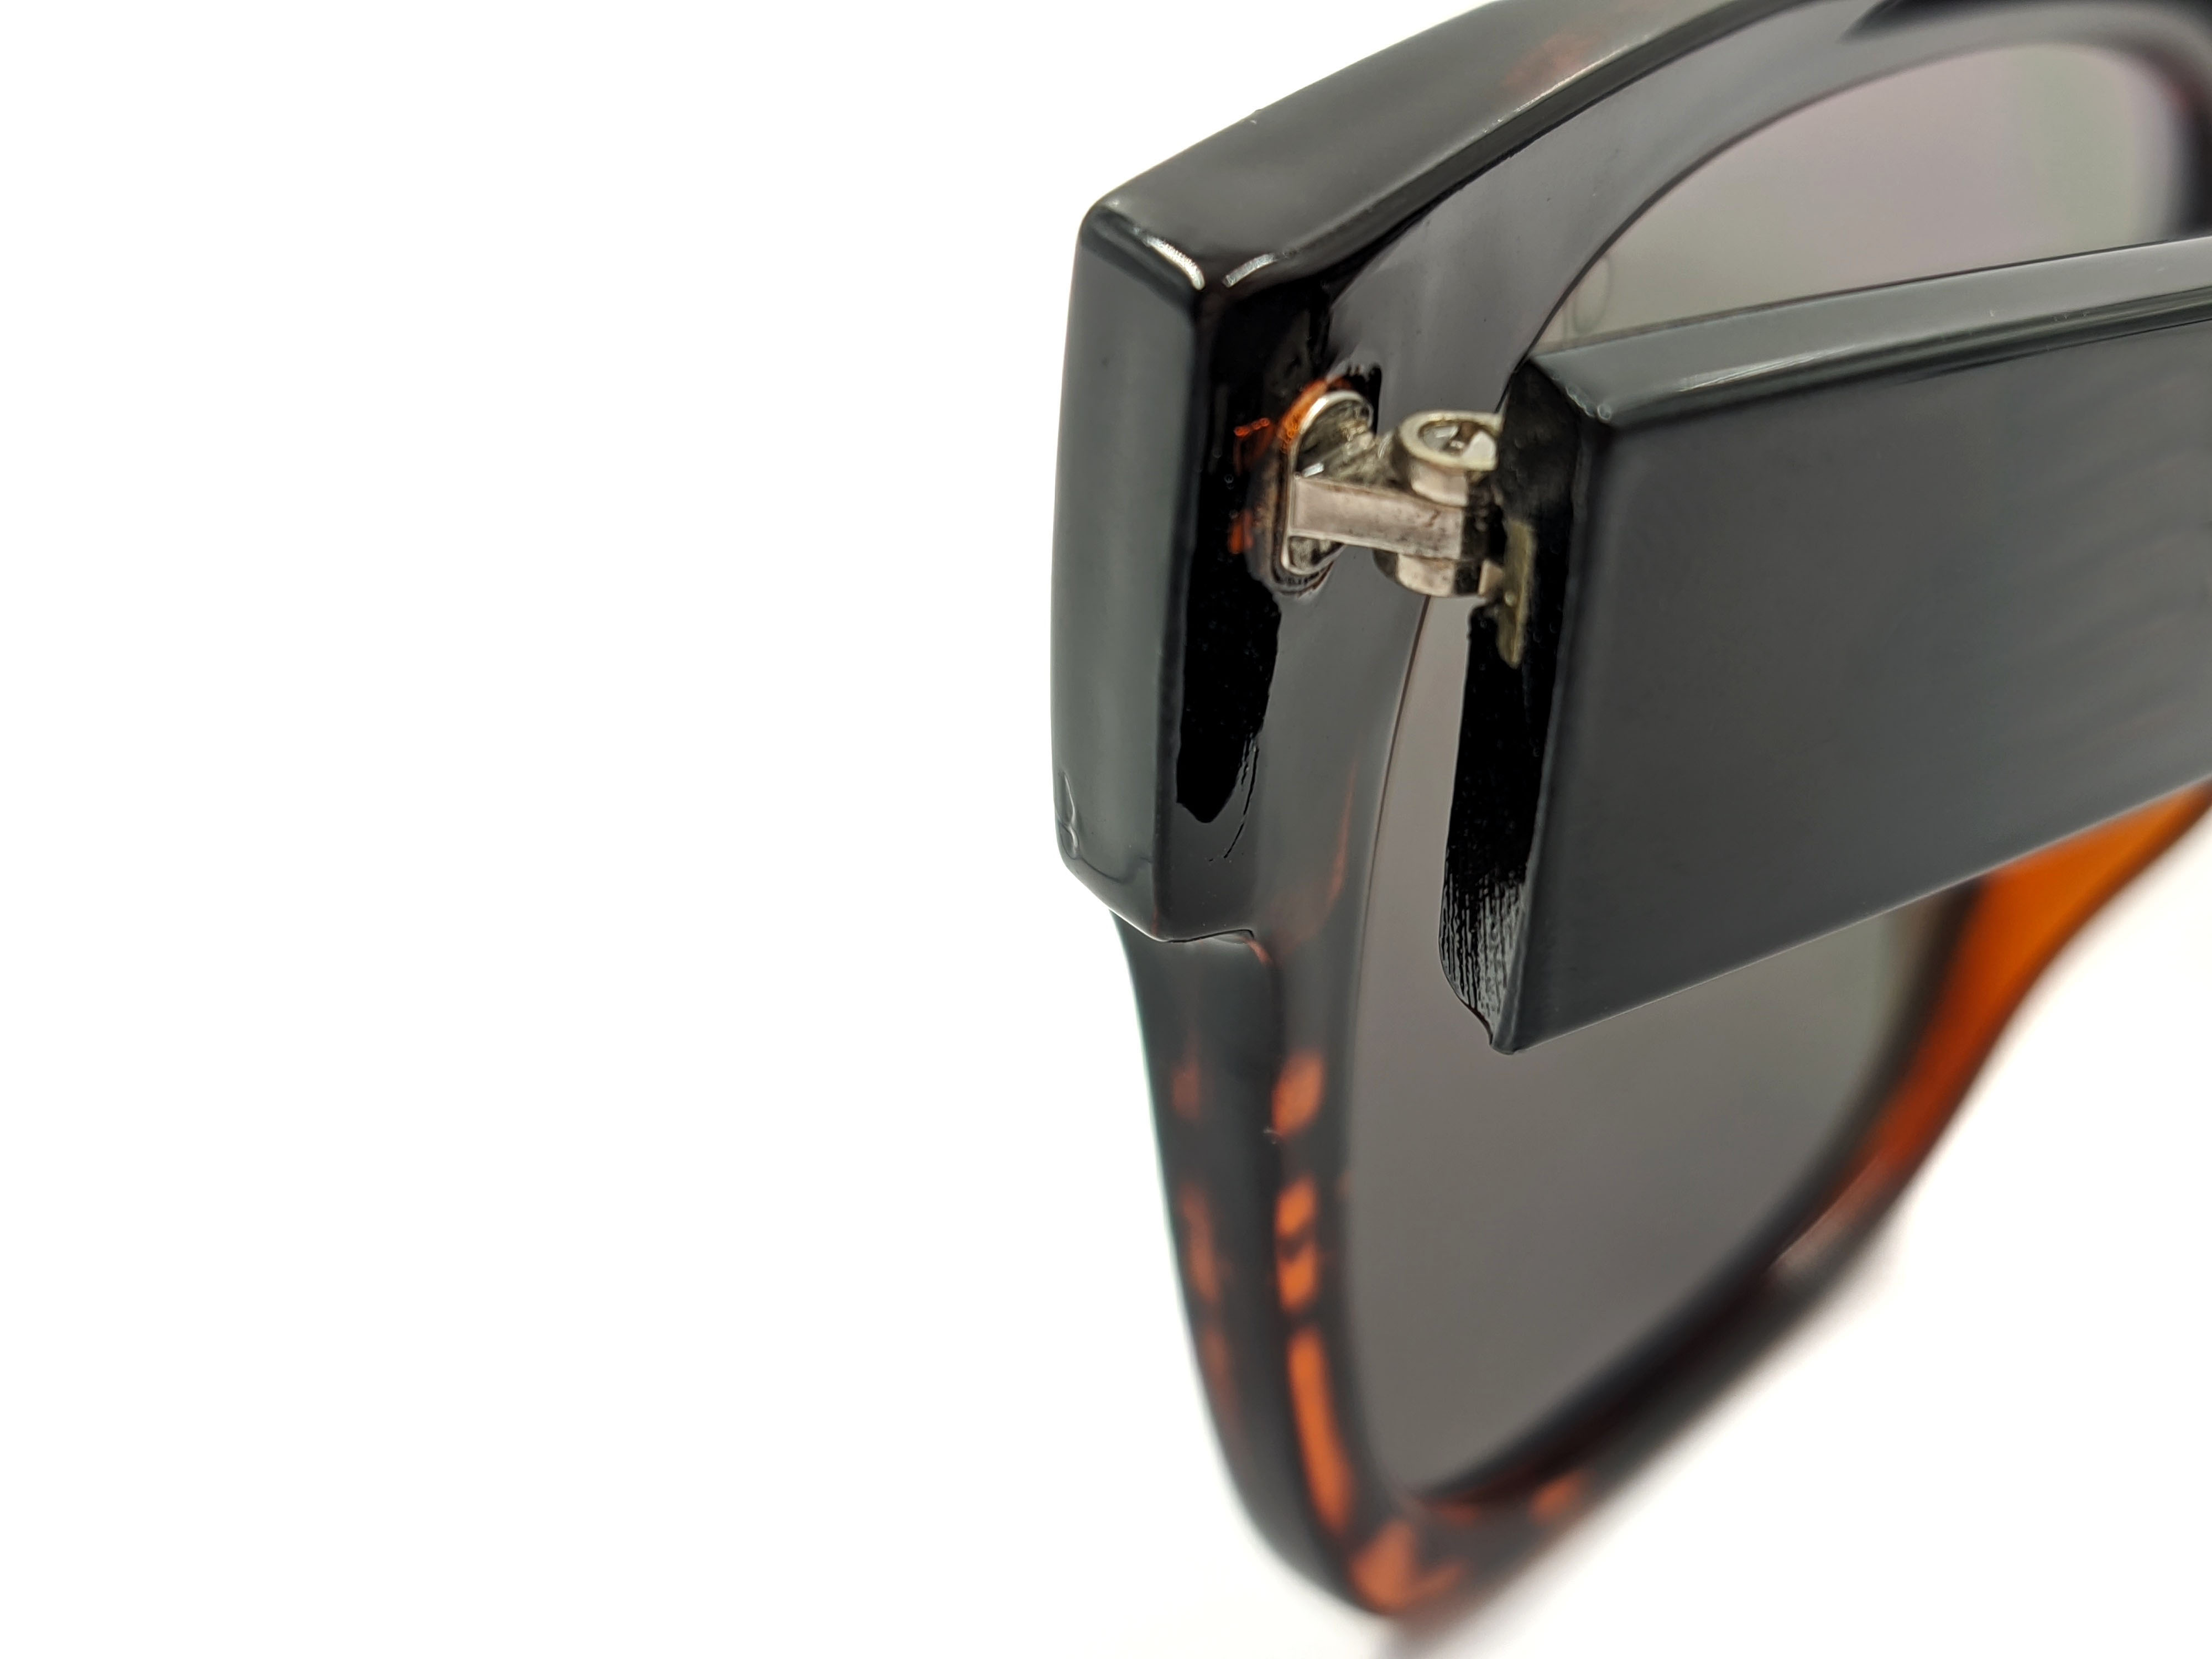 Gafas de sol unisex para hombre y mujer, moda de viaje, gafas de sol polarizadas anti-UV con marco cuadrado gris degradado 2021